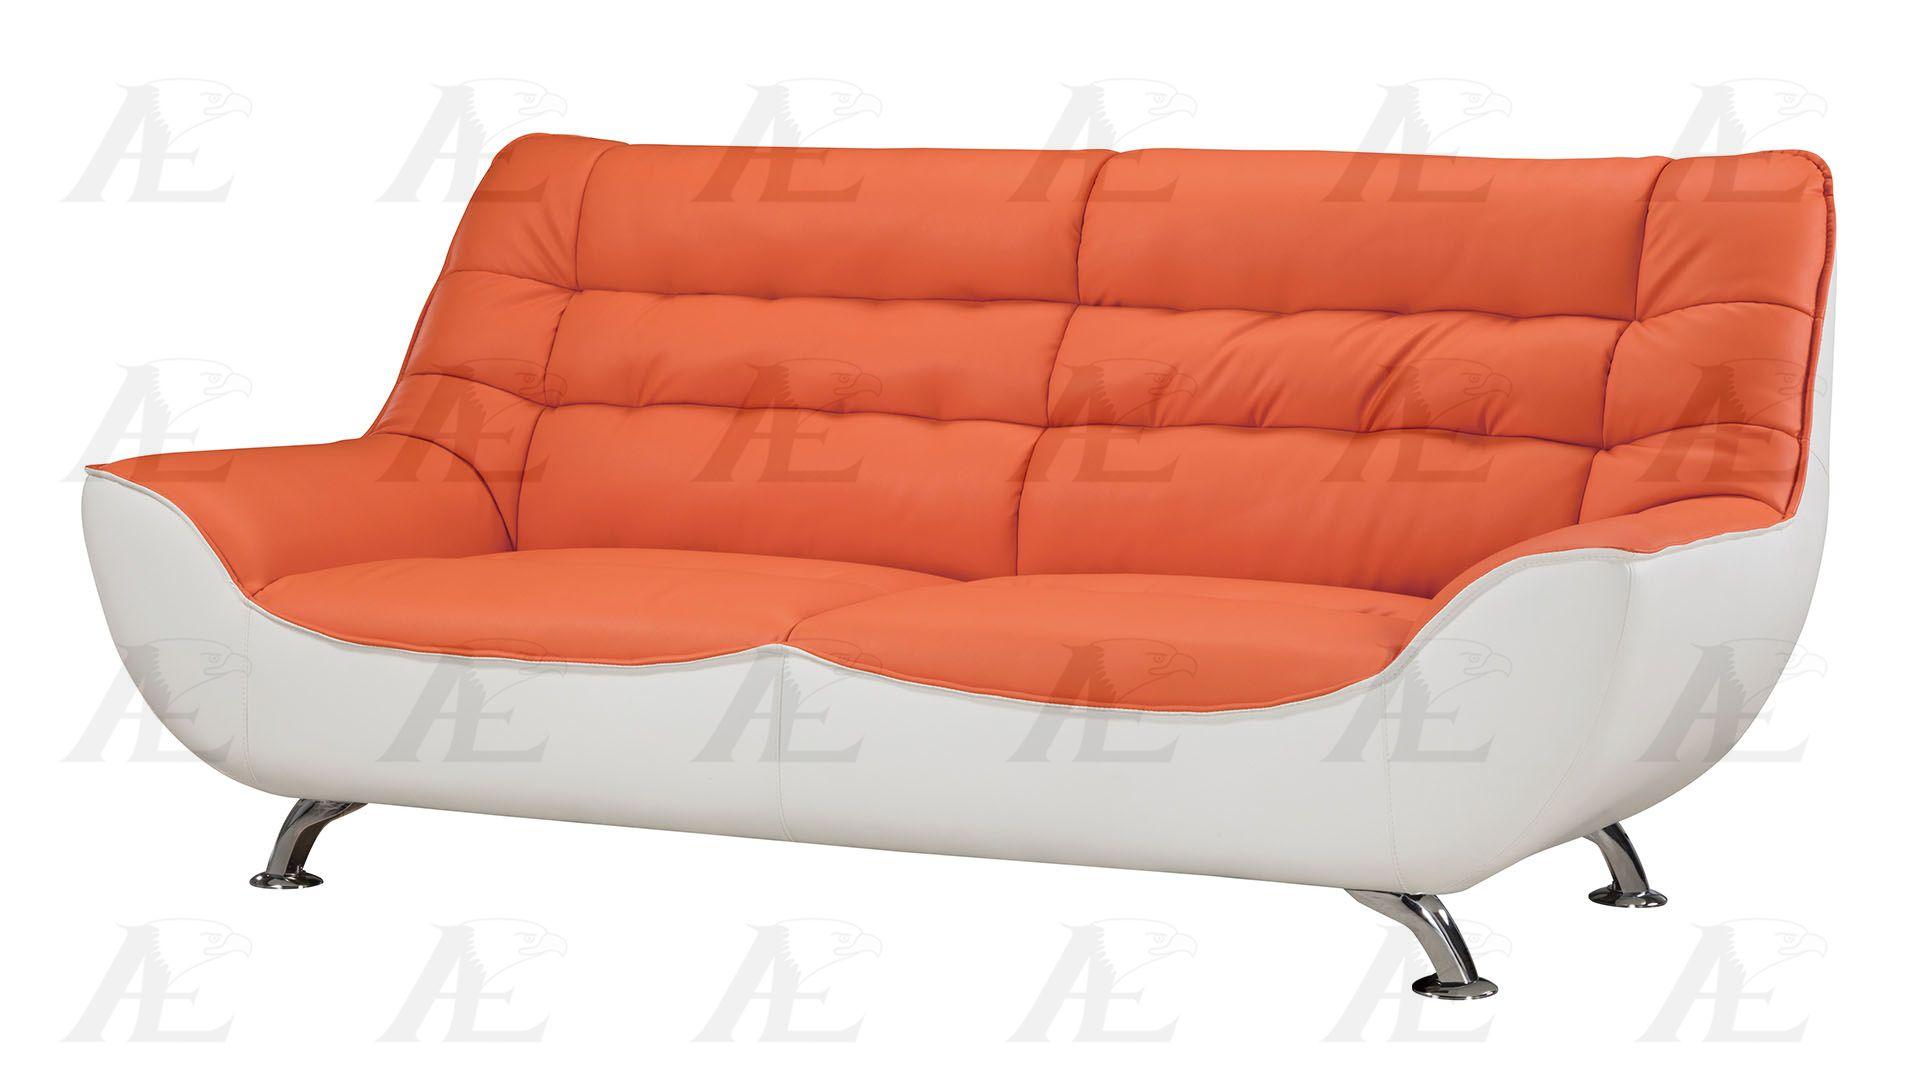 

    
American Eagle Furniture AE612-ORG.W Sofa and Loveseat Set Orange/White AE612-ORG.W Set-2
